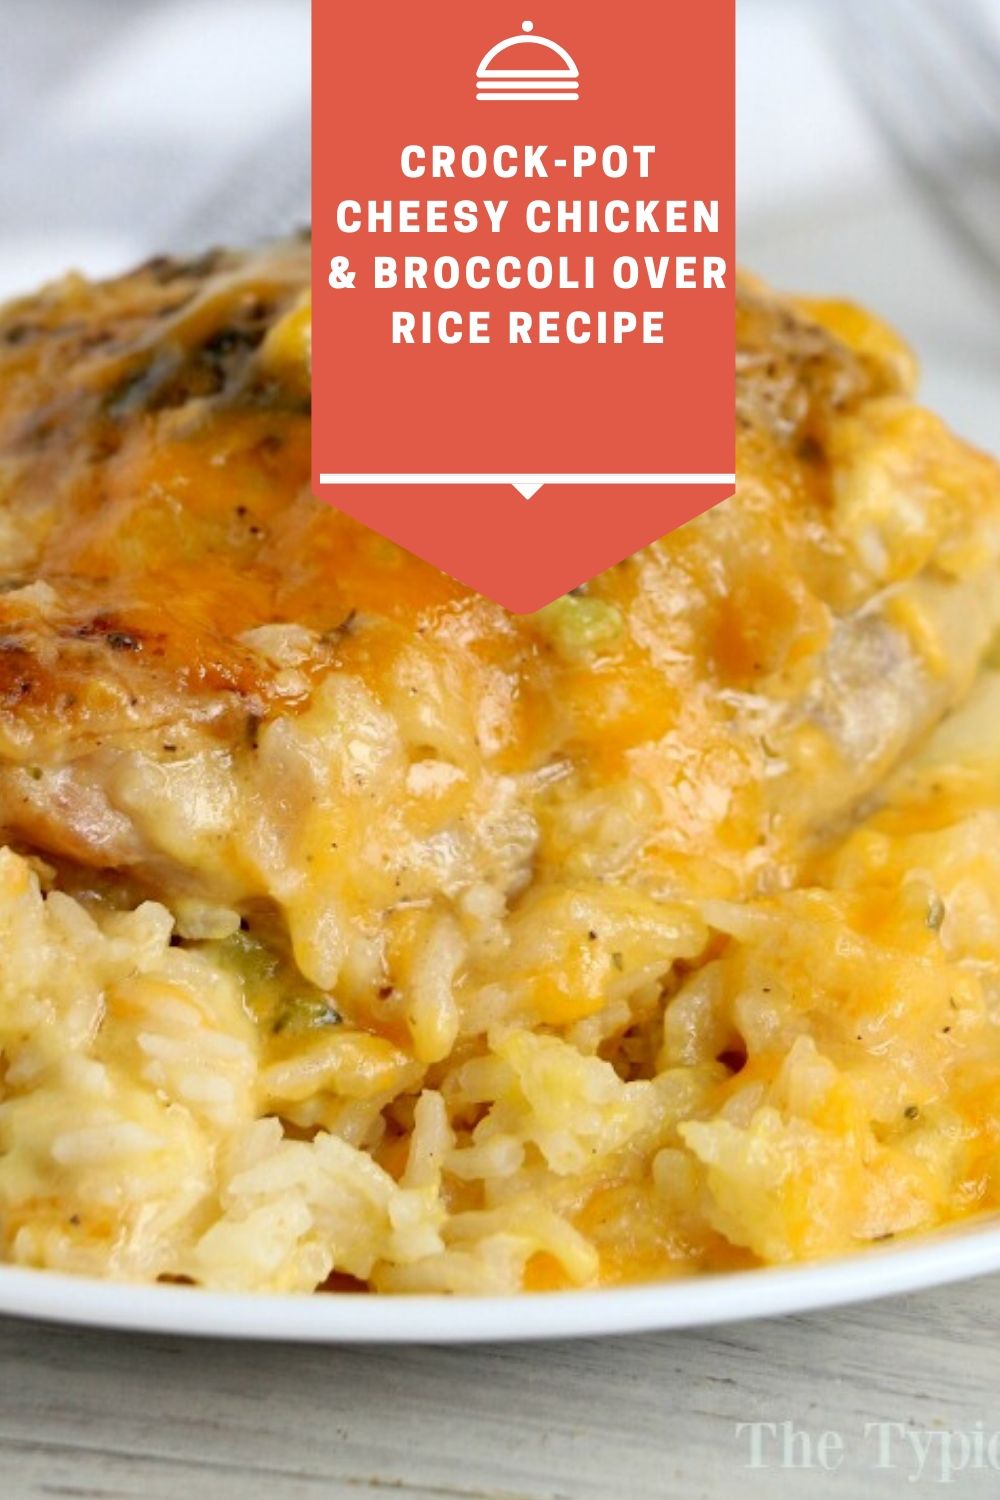 Crock-Pot Cheesy Chicken & Broccoli Over Rice Recipe